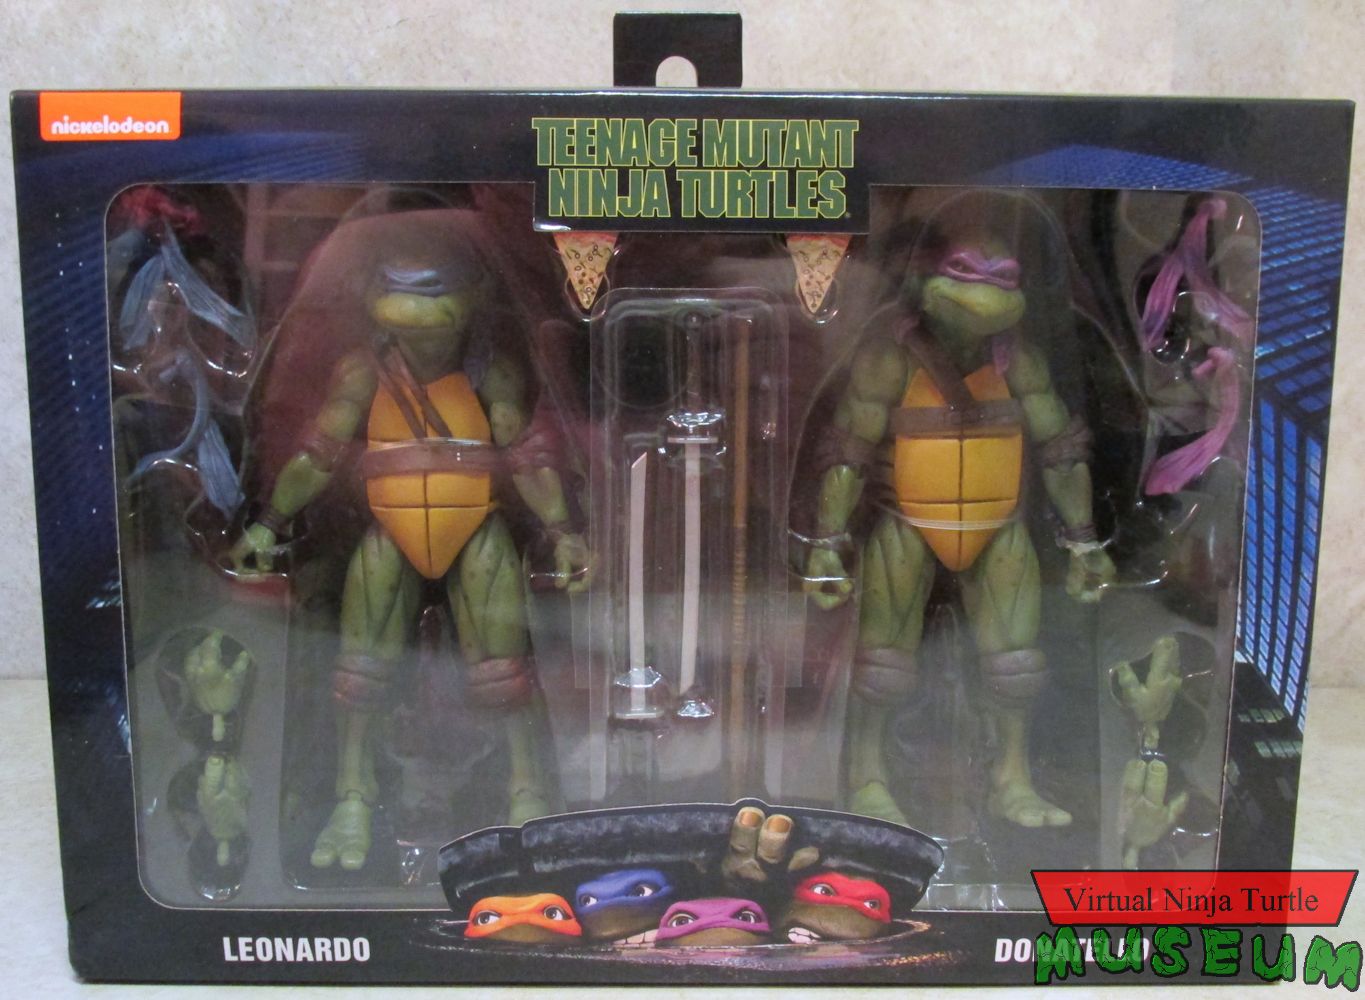 Leonardo & Donatello box front